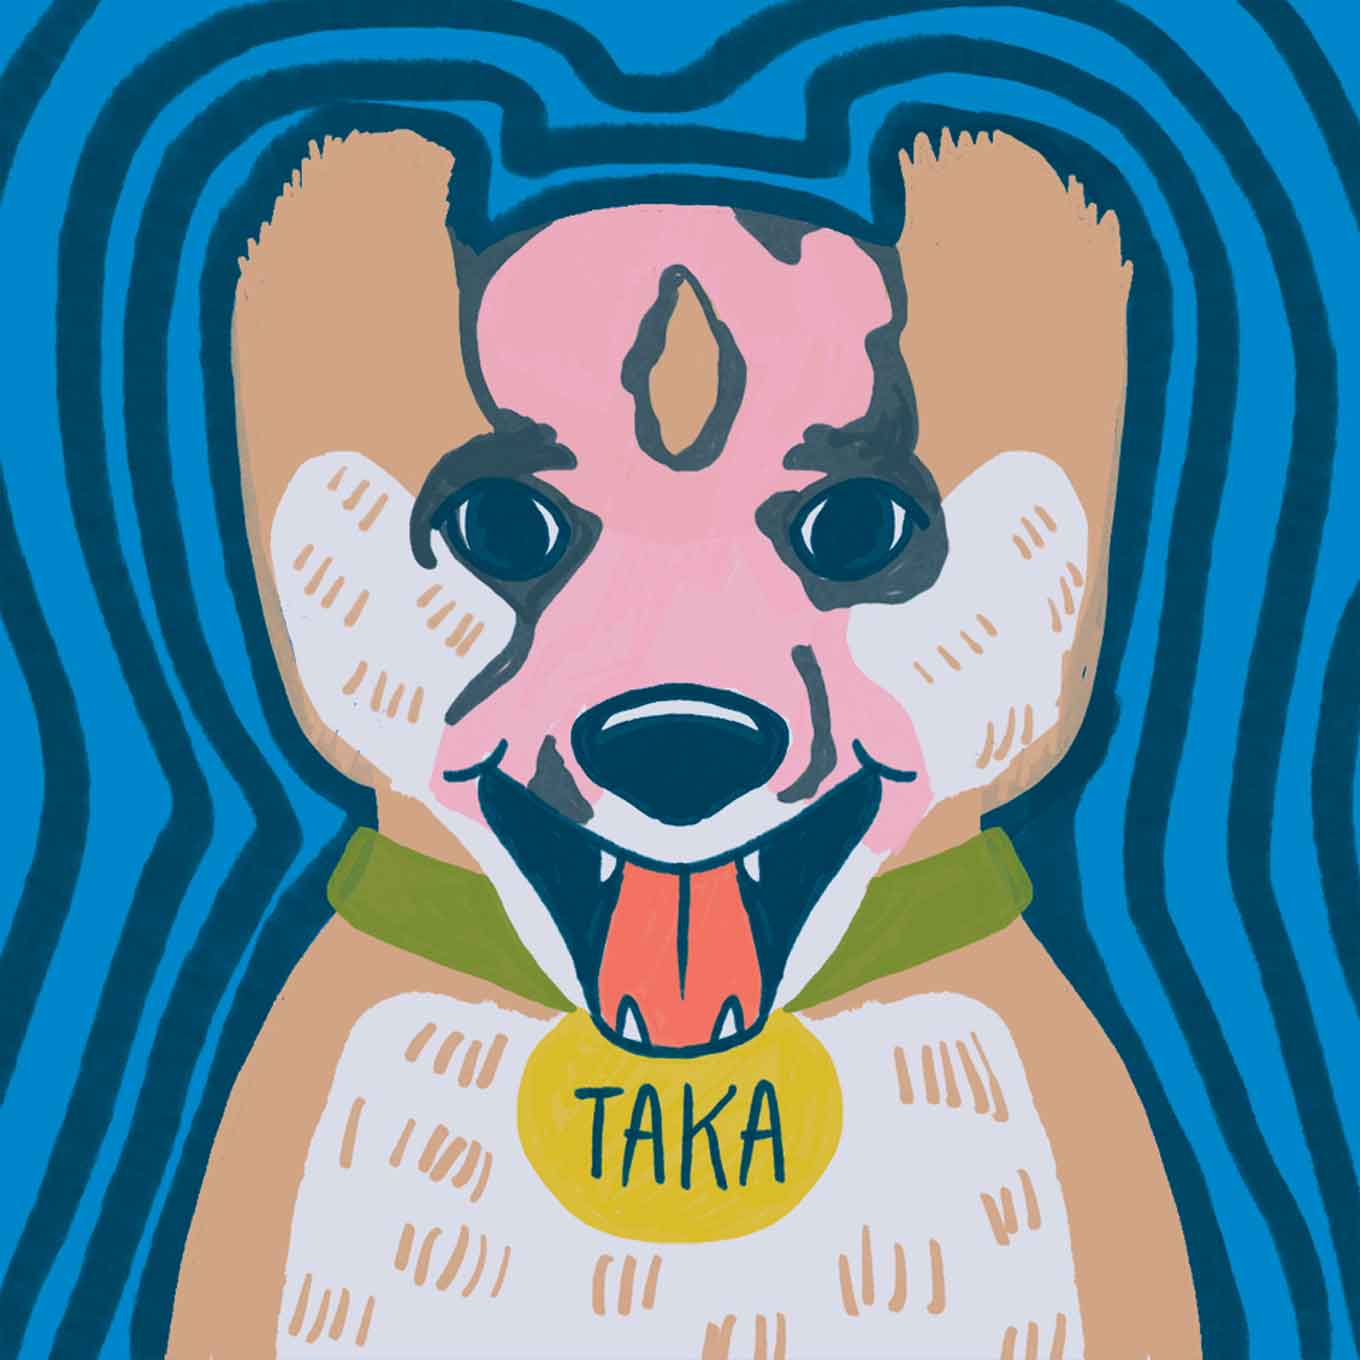 Taka de hond heeft een roze / huidvlek op de voorkant van zijn gezicht na een brandwond